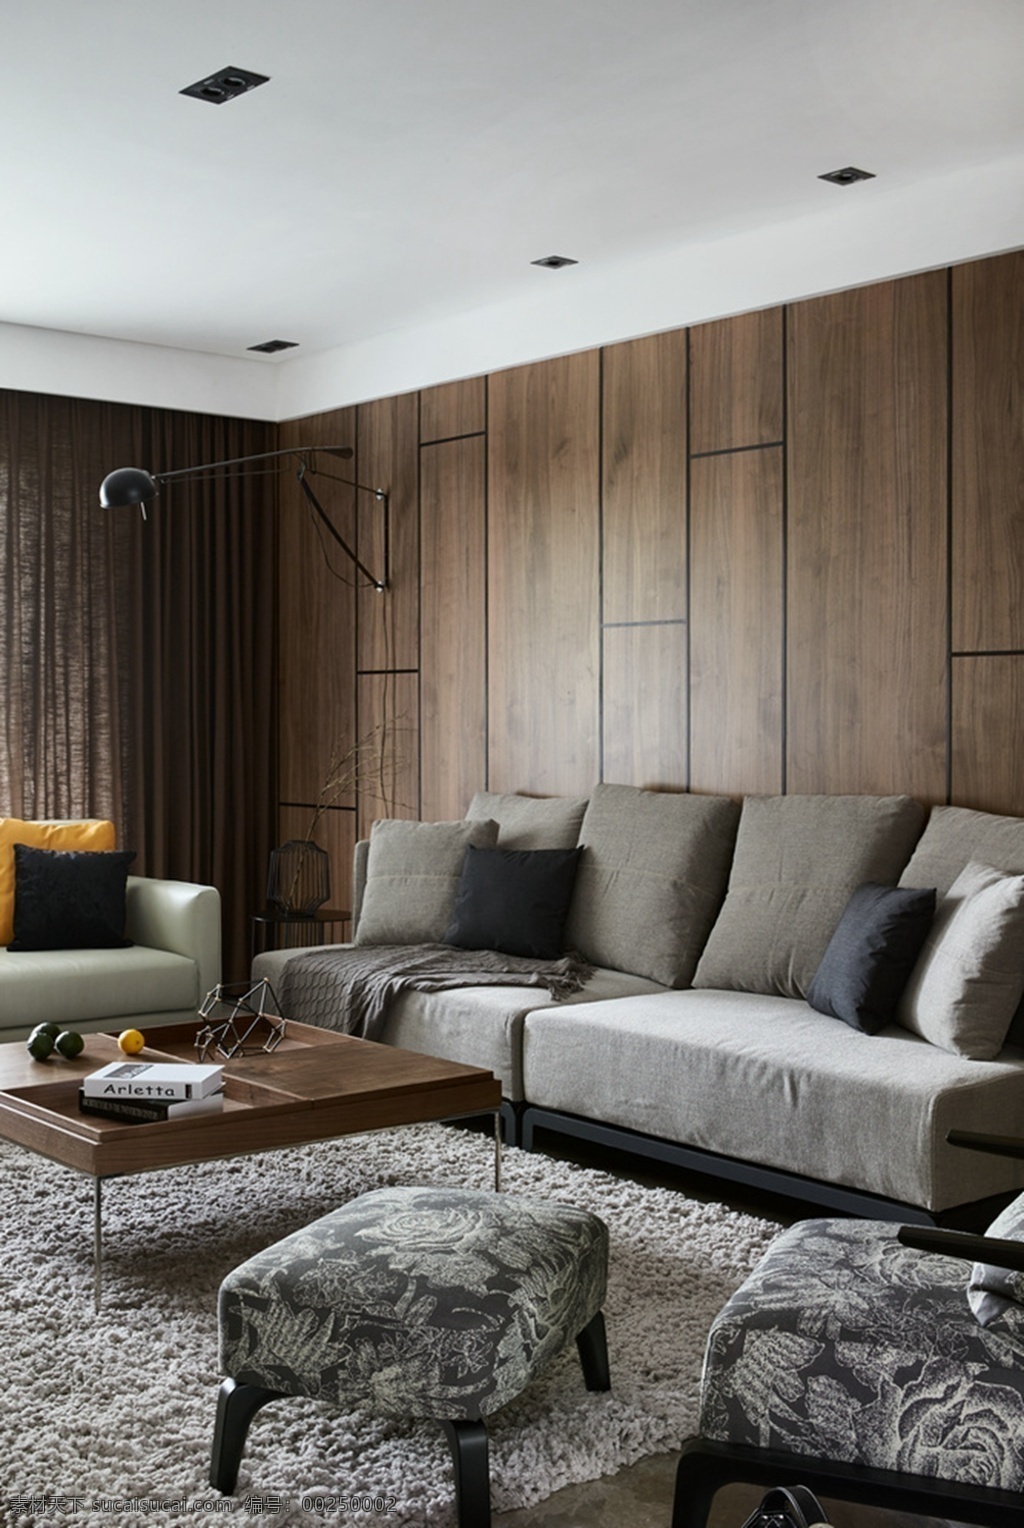 现代 轻 奢 客厅 灰色 花纹 凳子 室内装修 效果图 客厅装修 木制背景墙 木制茶几 浅色沙发